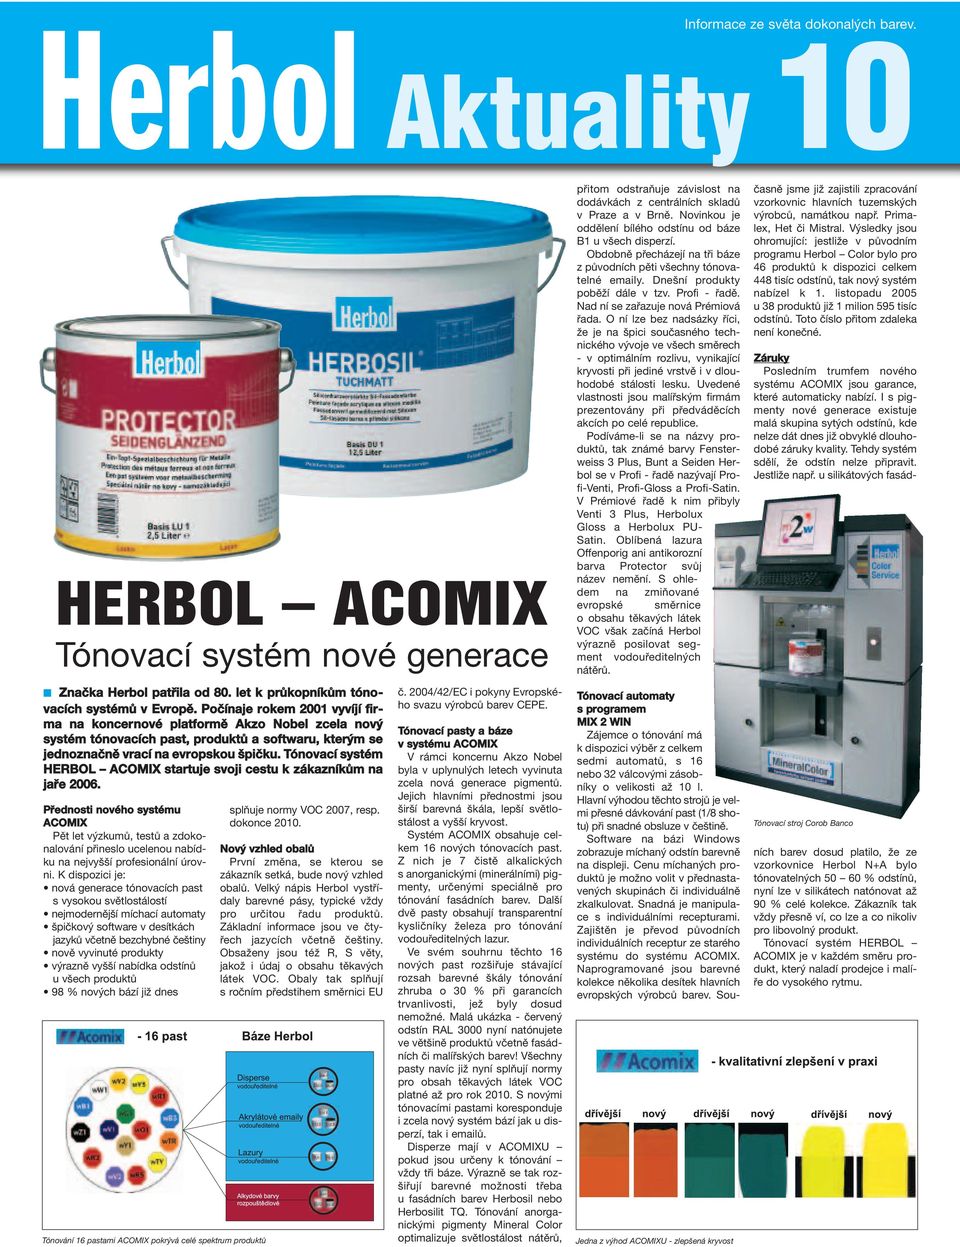 Tónovací systém HERBOL ACOMIX startuje svoji cestu k zákazníkům na jaře 2006.